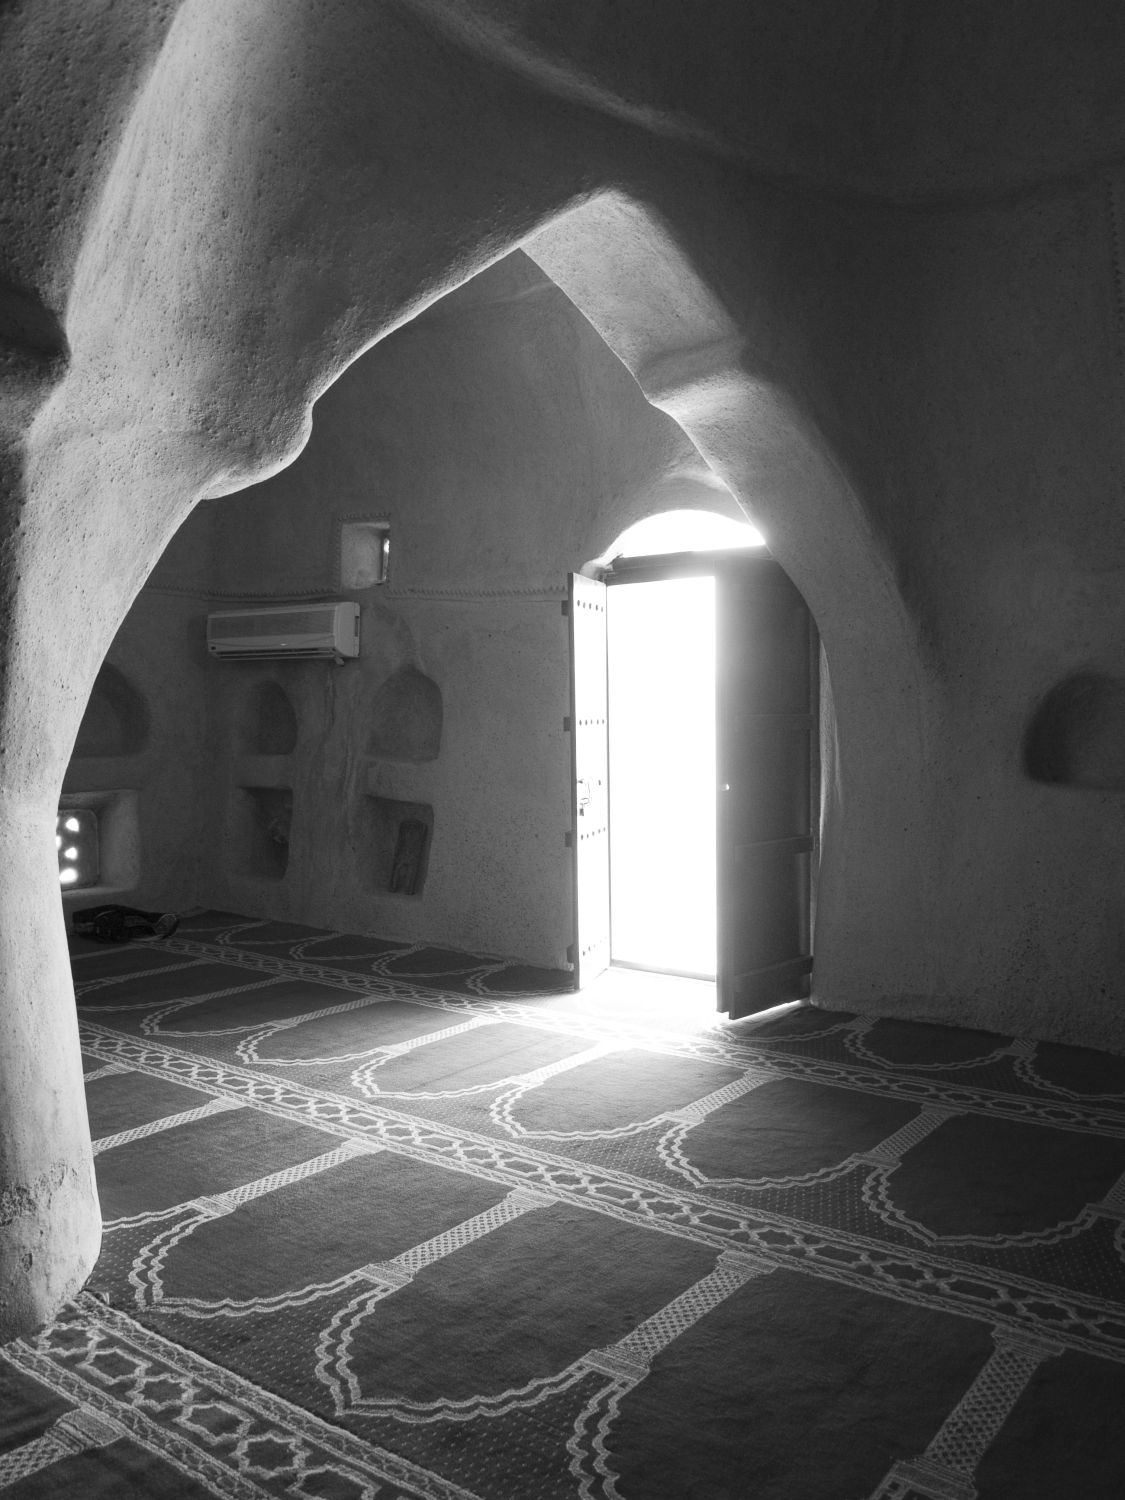 Jami' al-Bidiya - Internal view of the prayer hall